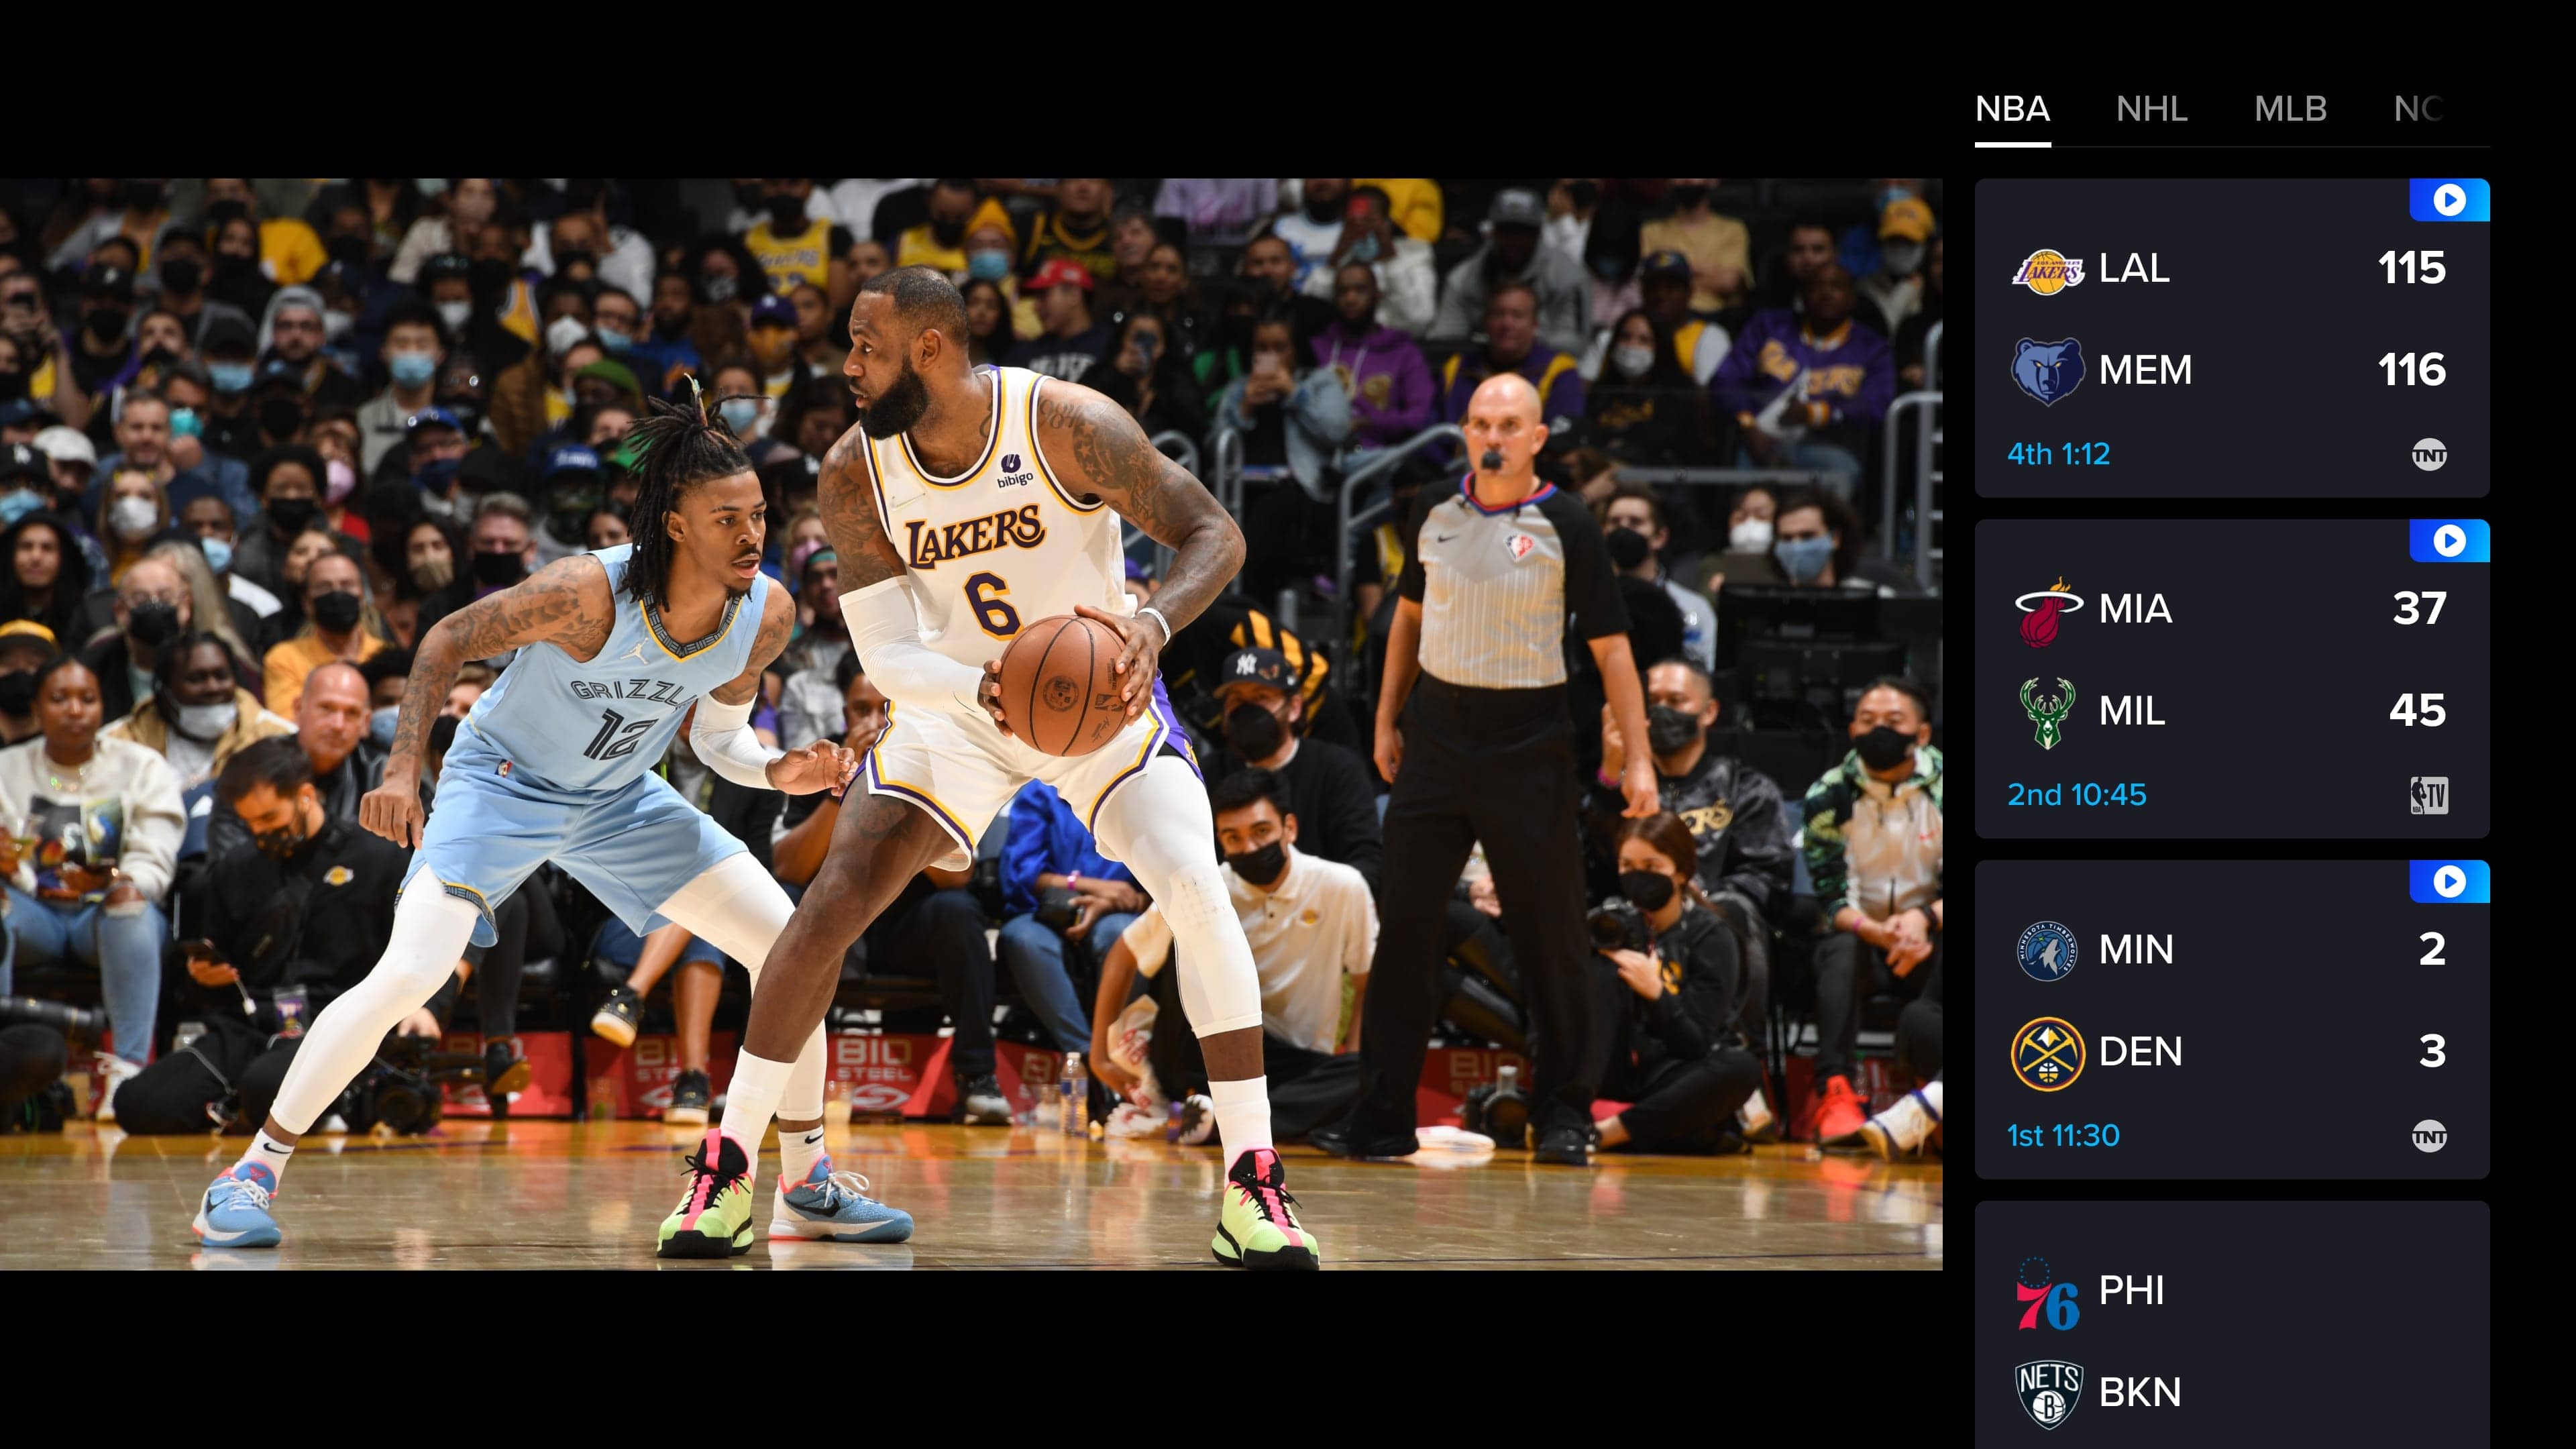 Watch NBA Basketball Games Live Online